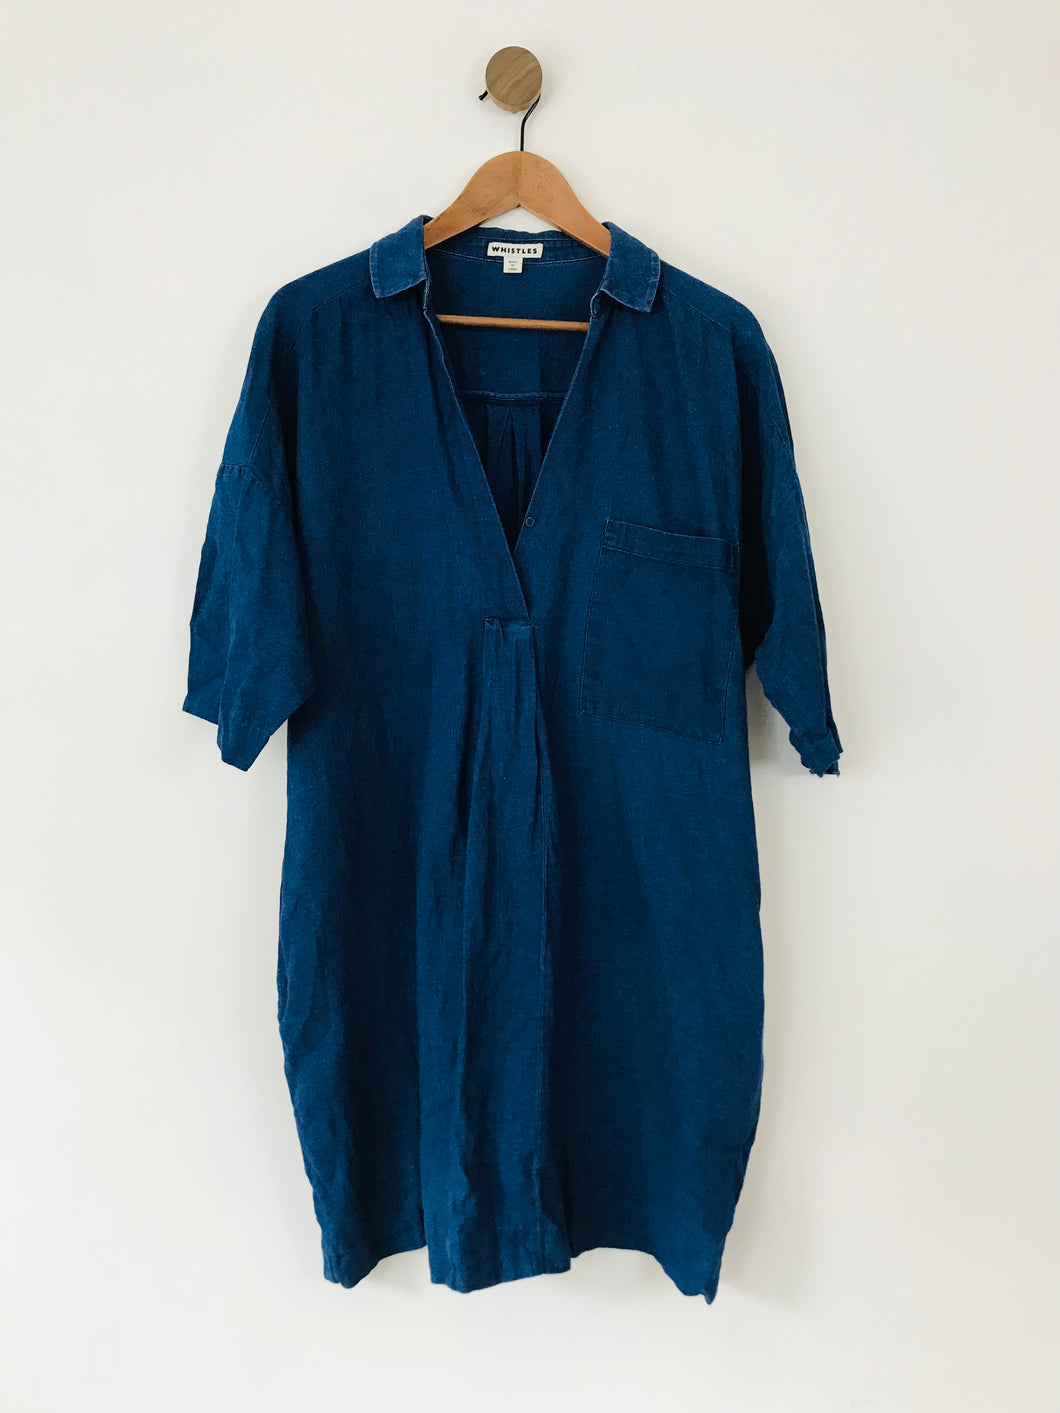 Whistles Women's Oversized Shirt Dress | M UK10-12 | Blue